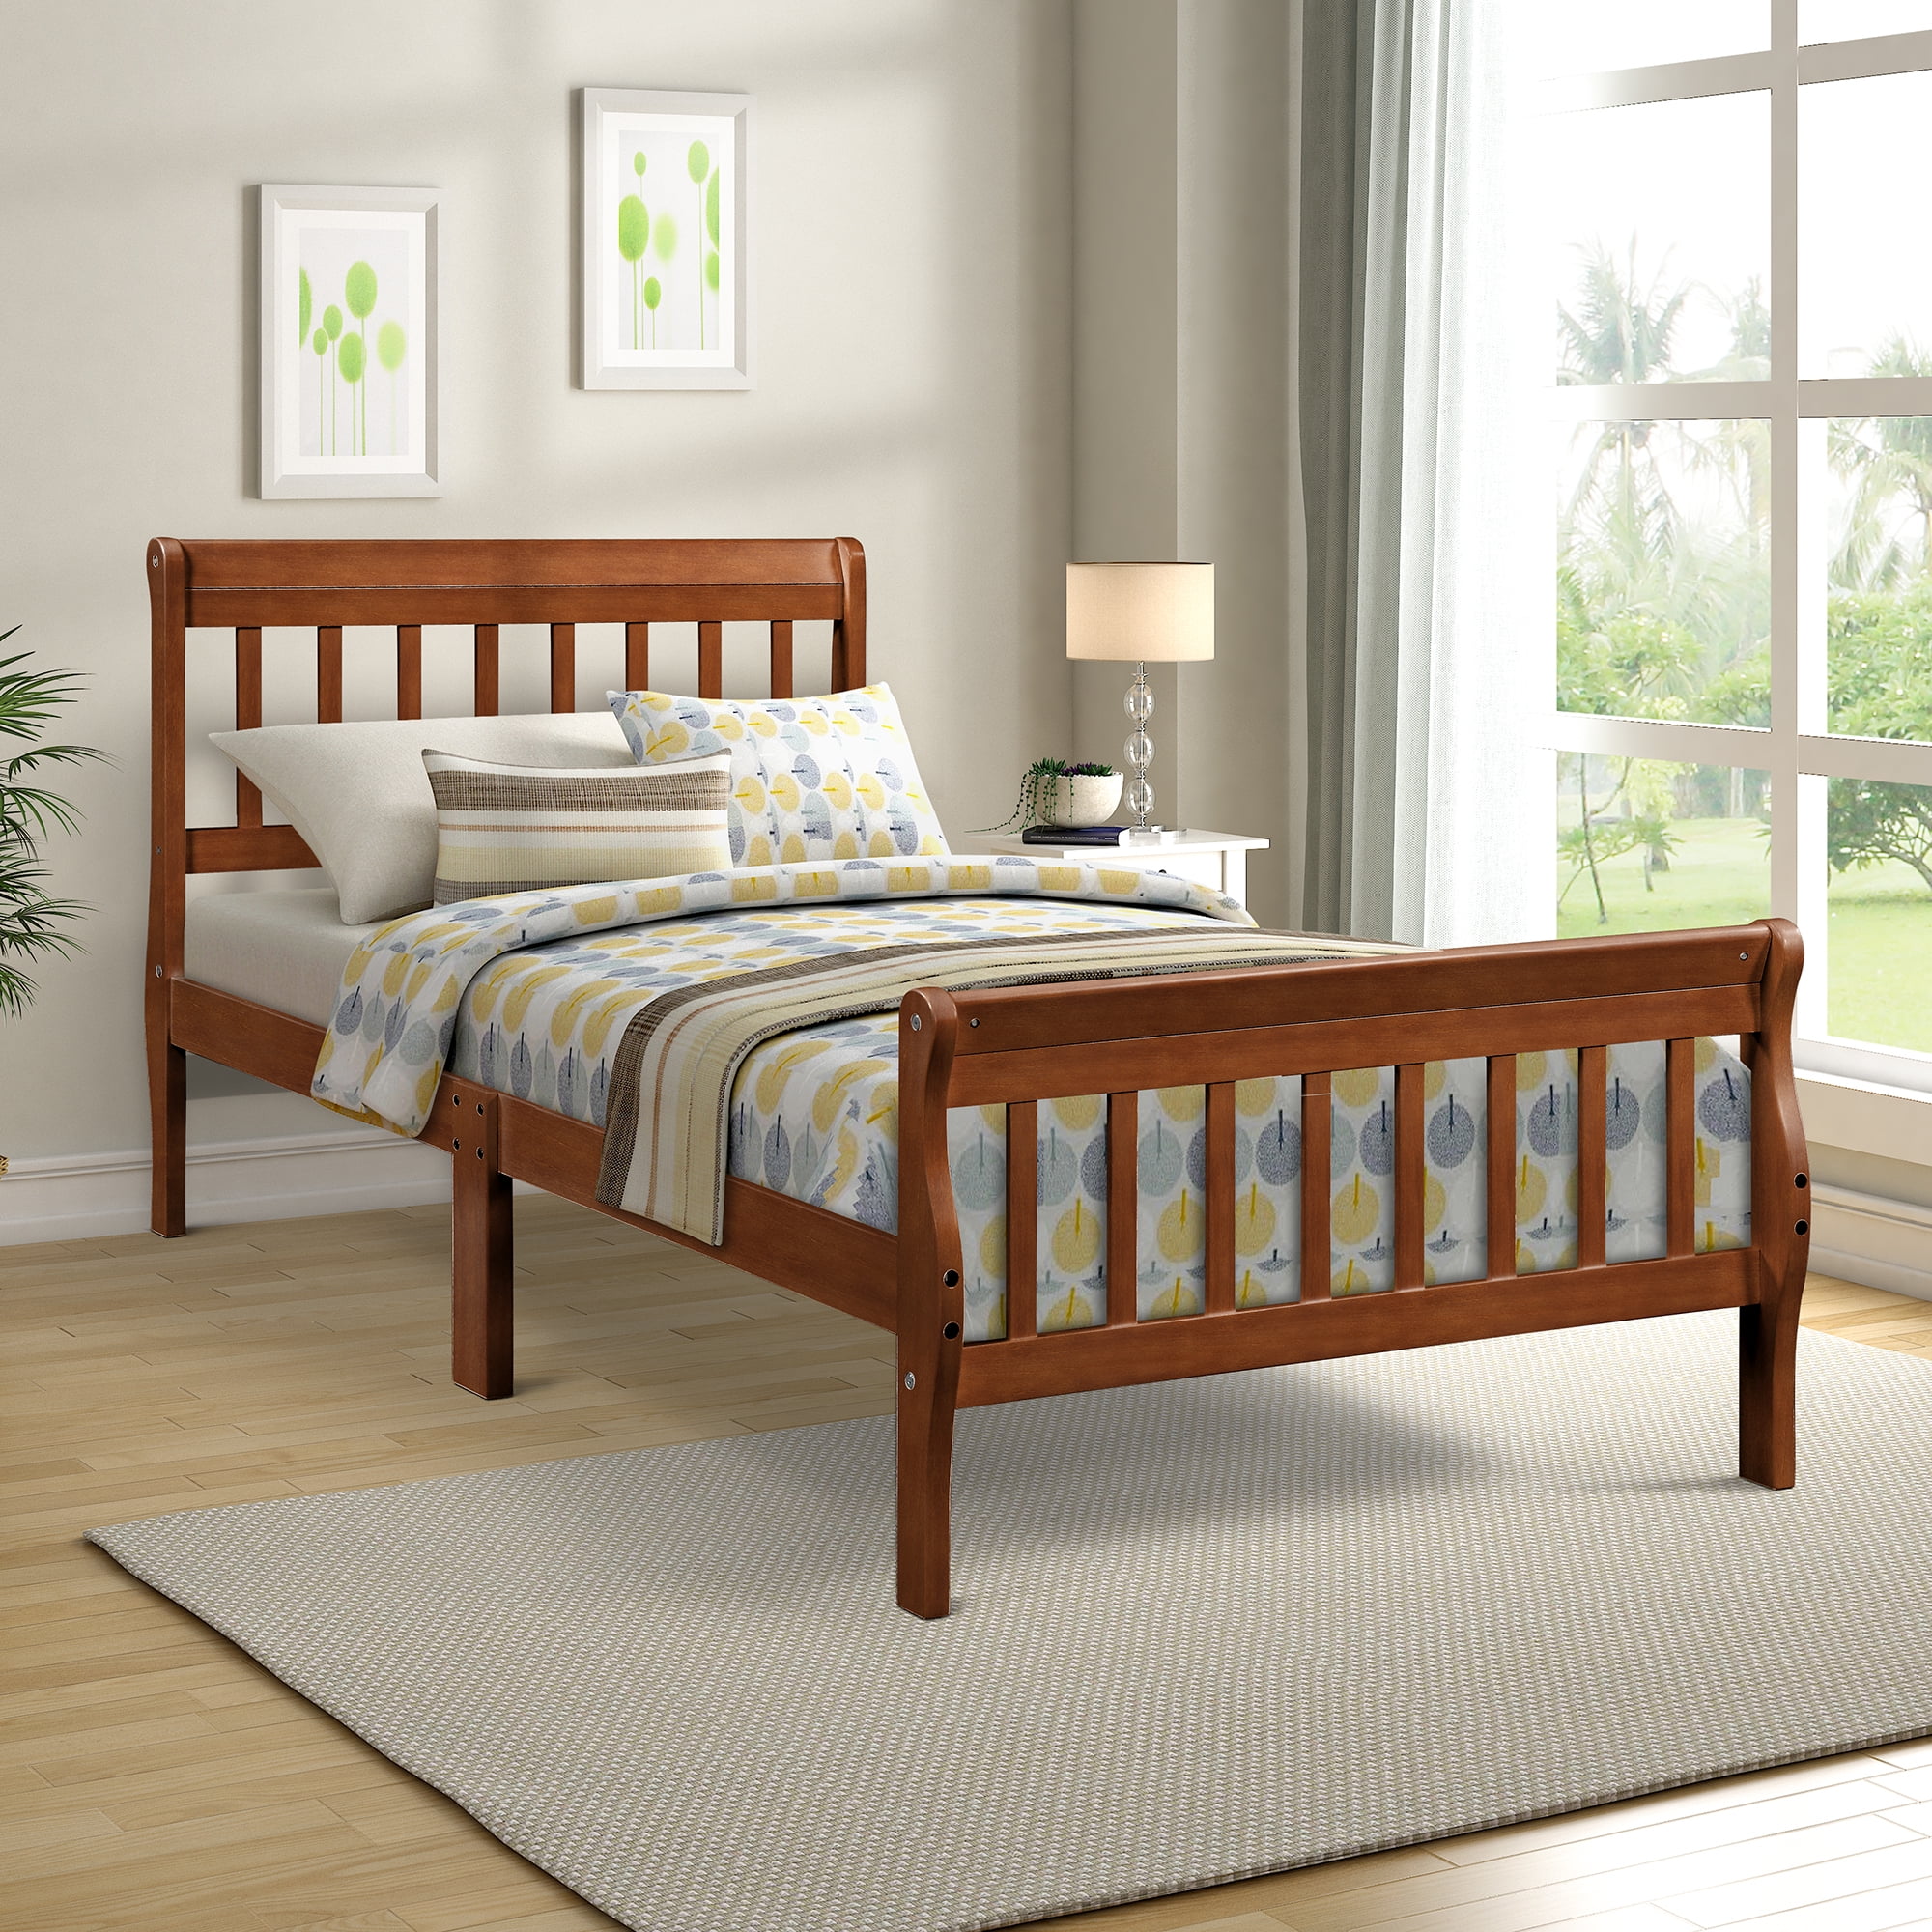 Twin Bed Frame, Modern Wood Platform Bed Frame with ...